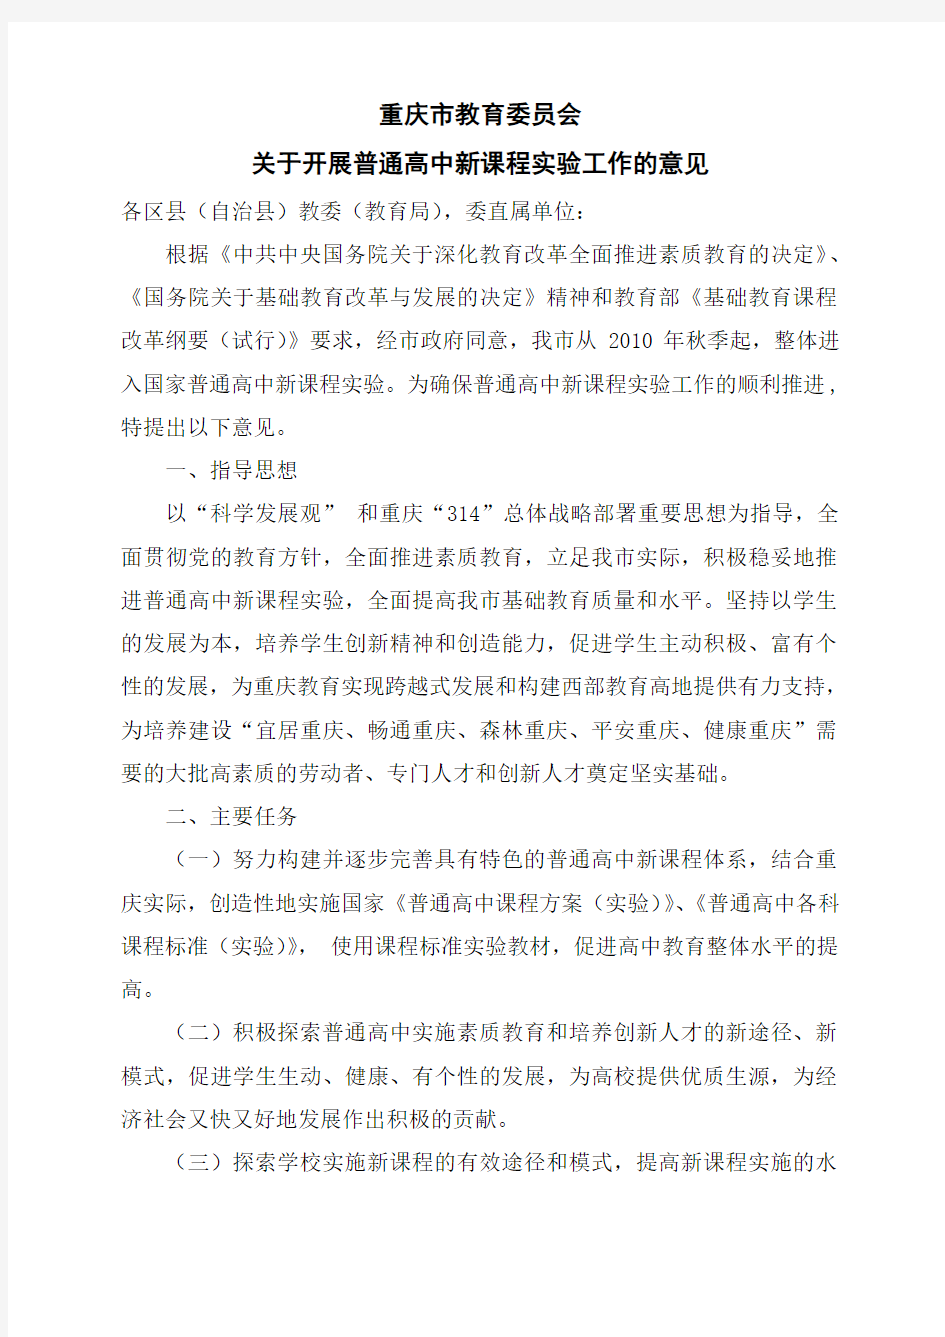 重庆市教育委员会关于开展普通高中新课改的意见